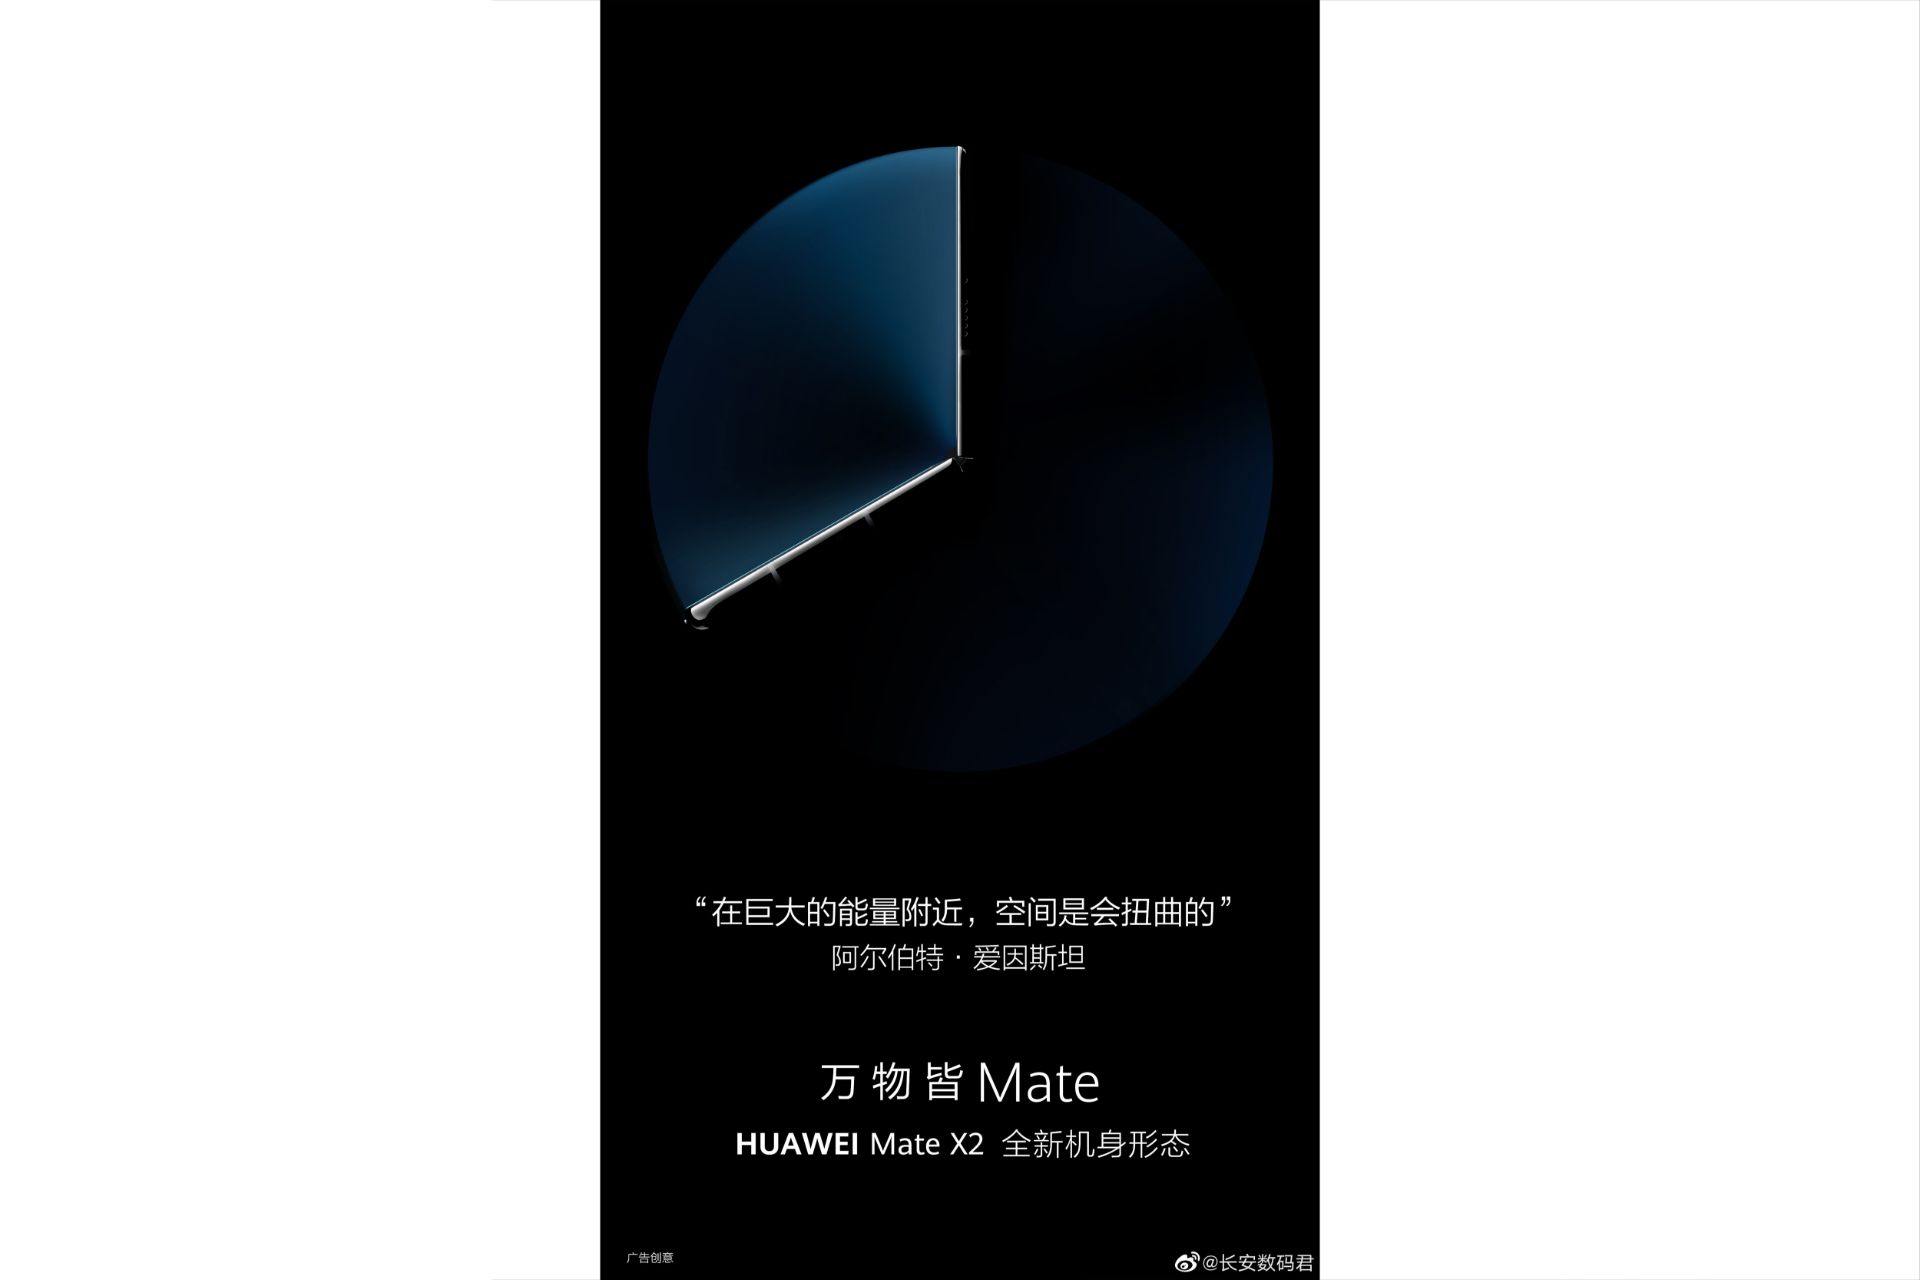 پوستر فاش شده هواوی میت ایکس 2 / Huawei Mate X2 تاشدگی به سمت داخل